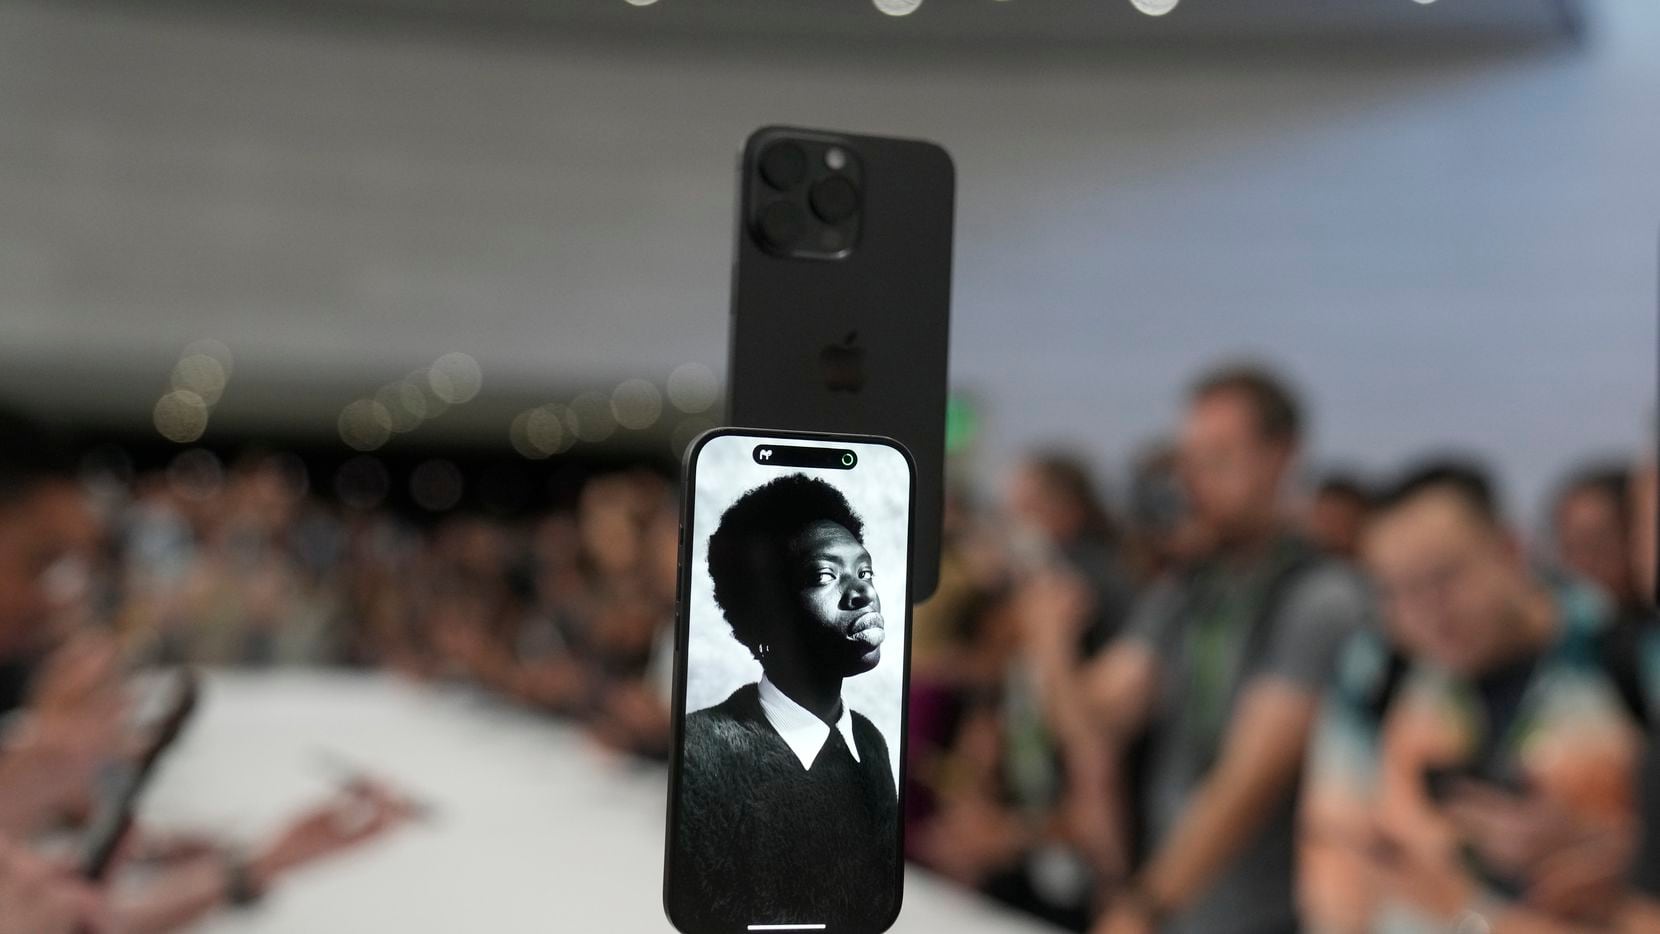 iPhone 15: Conozca las promociones para conseguir gratis el nuevo teléfono  de Apple